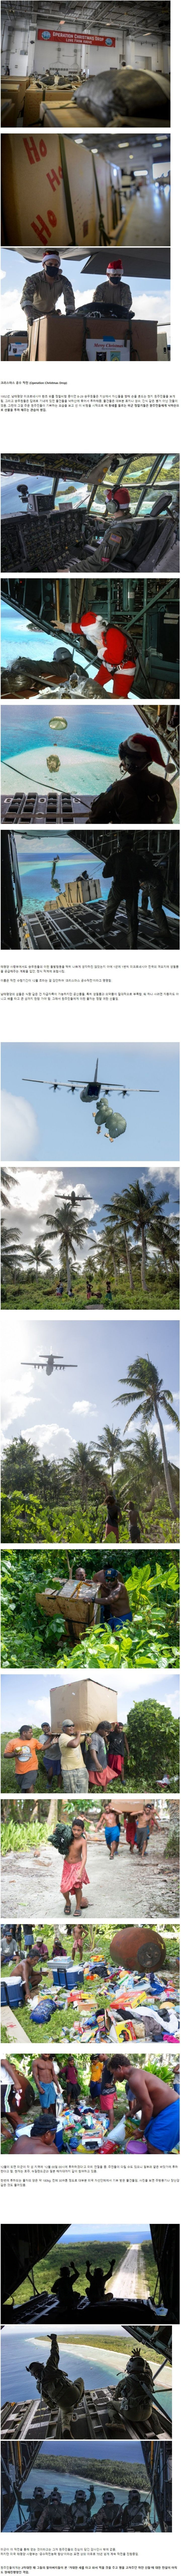 [스압] 미군이 70여년간 동남아 섬에 보급품을 투하하는 이유.jpg